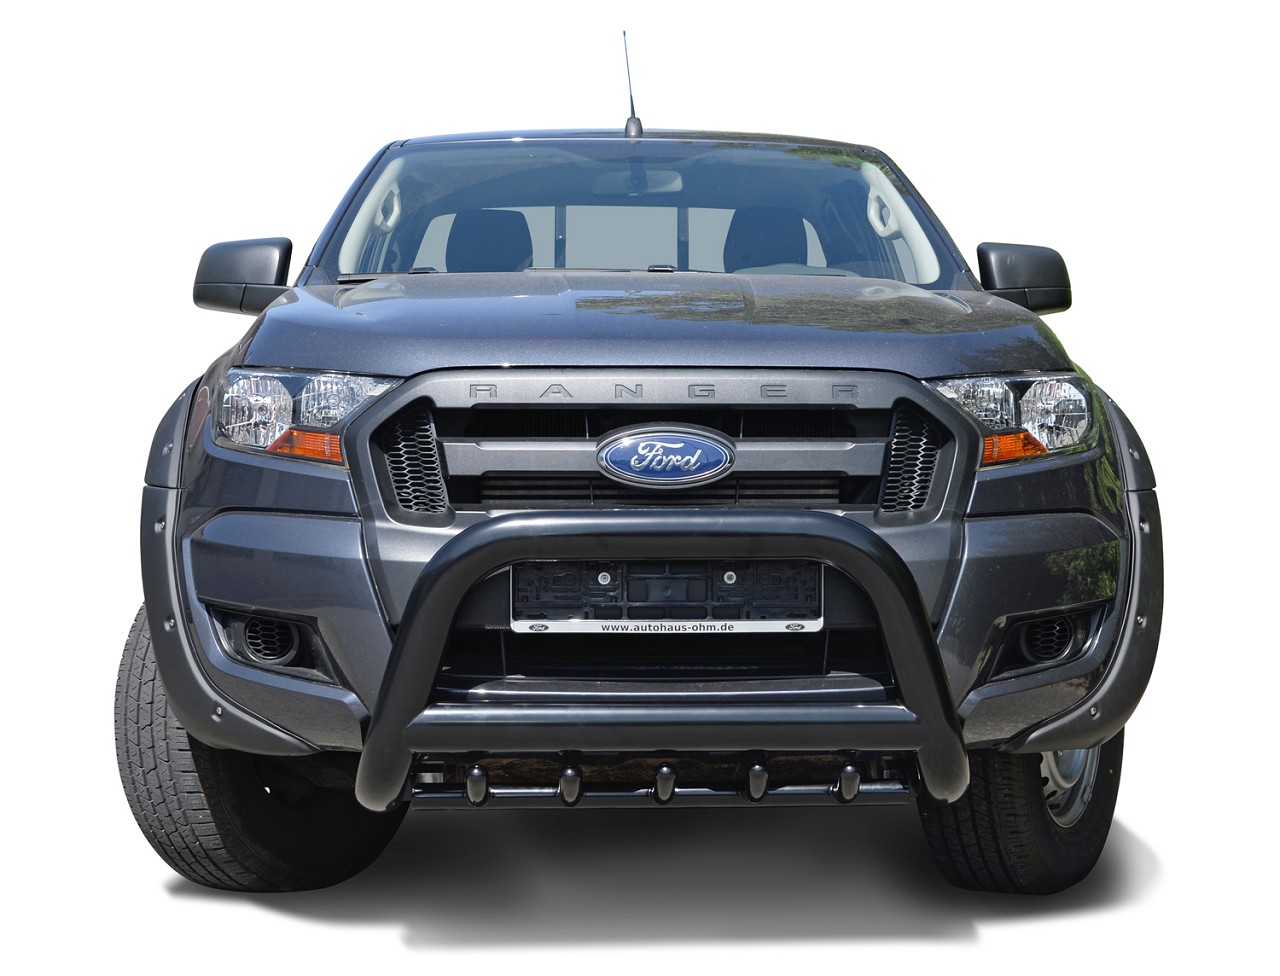 Kotflügelverbreiterung im "Pocket-Style" Design passend für Ford Ranger (2016 - 12/2018)